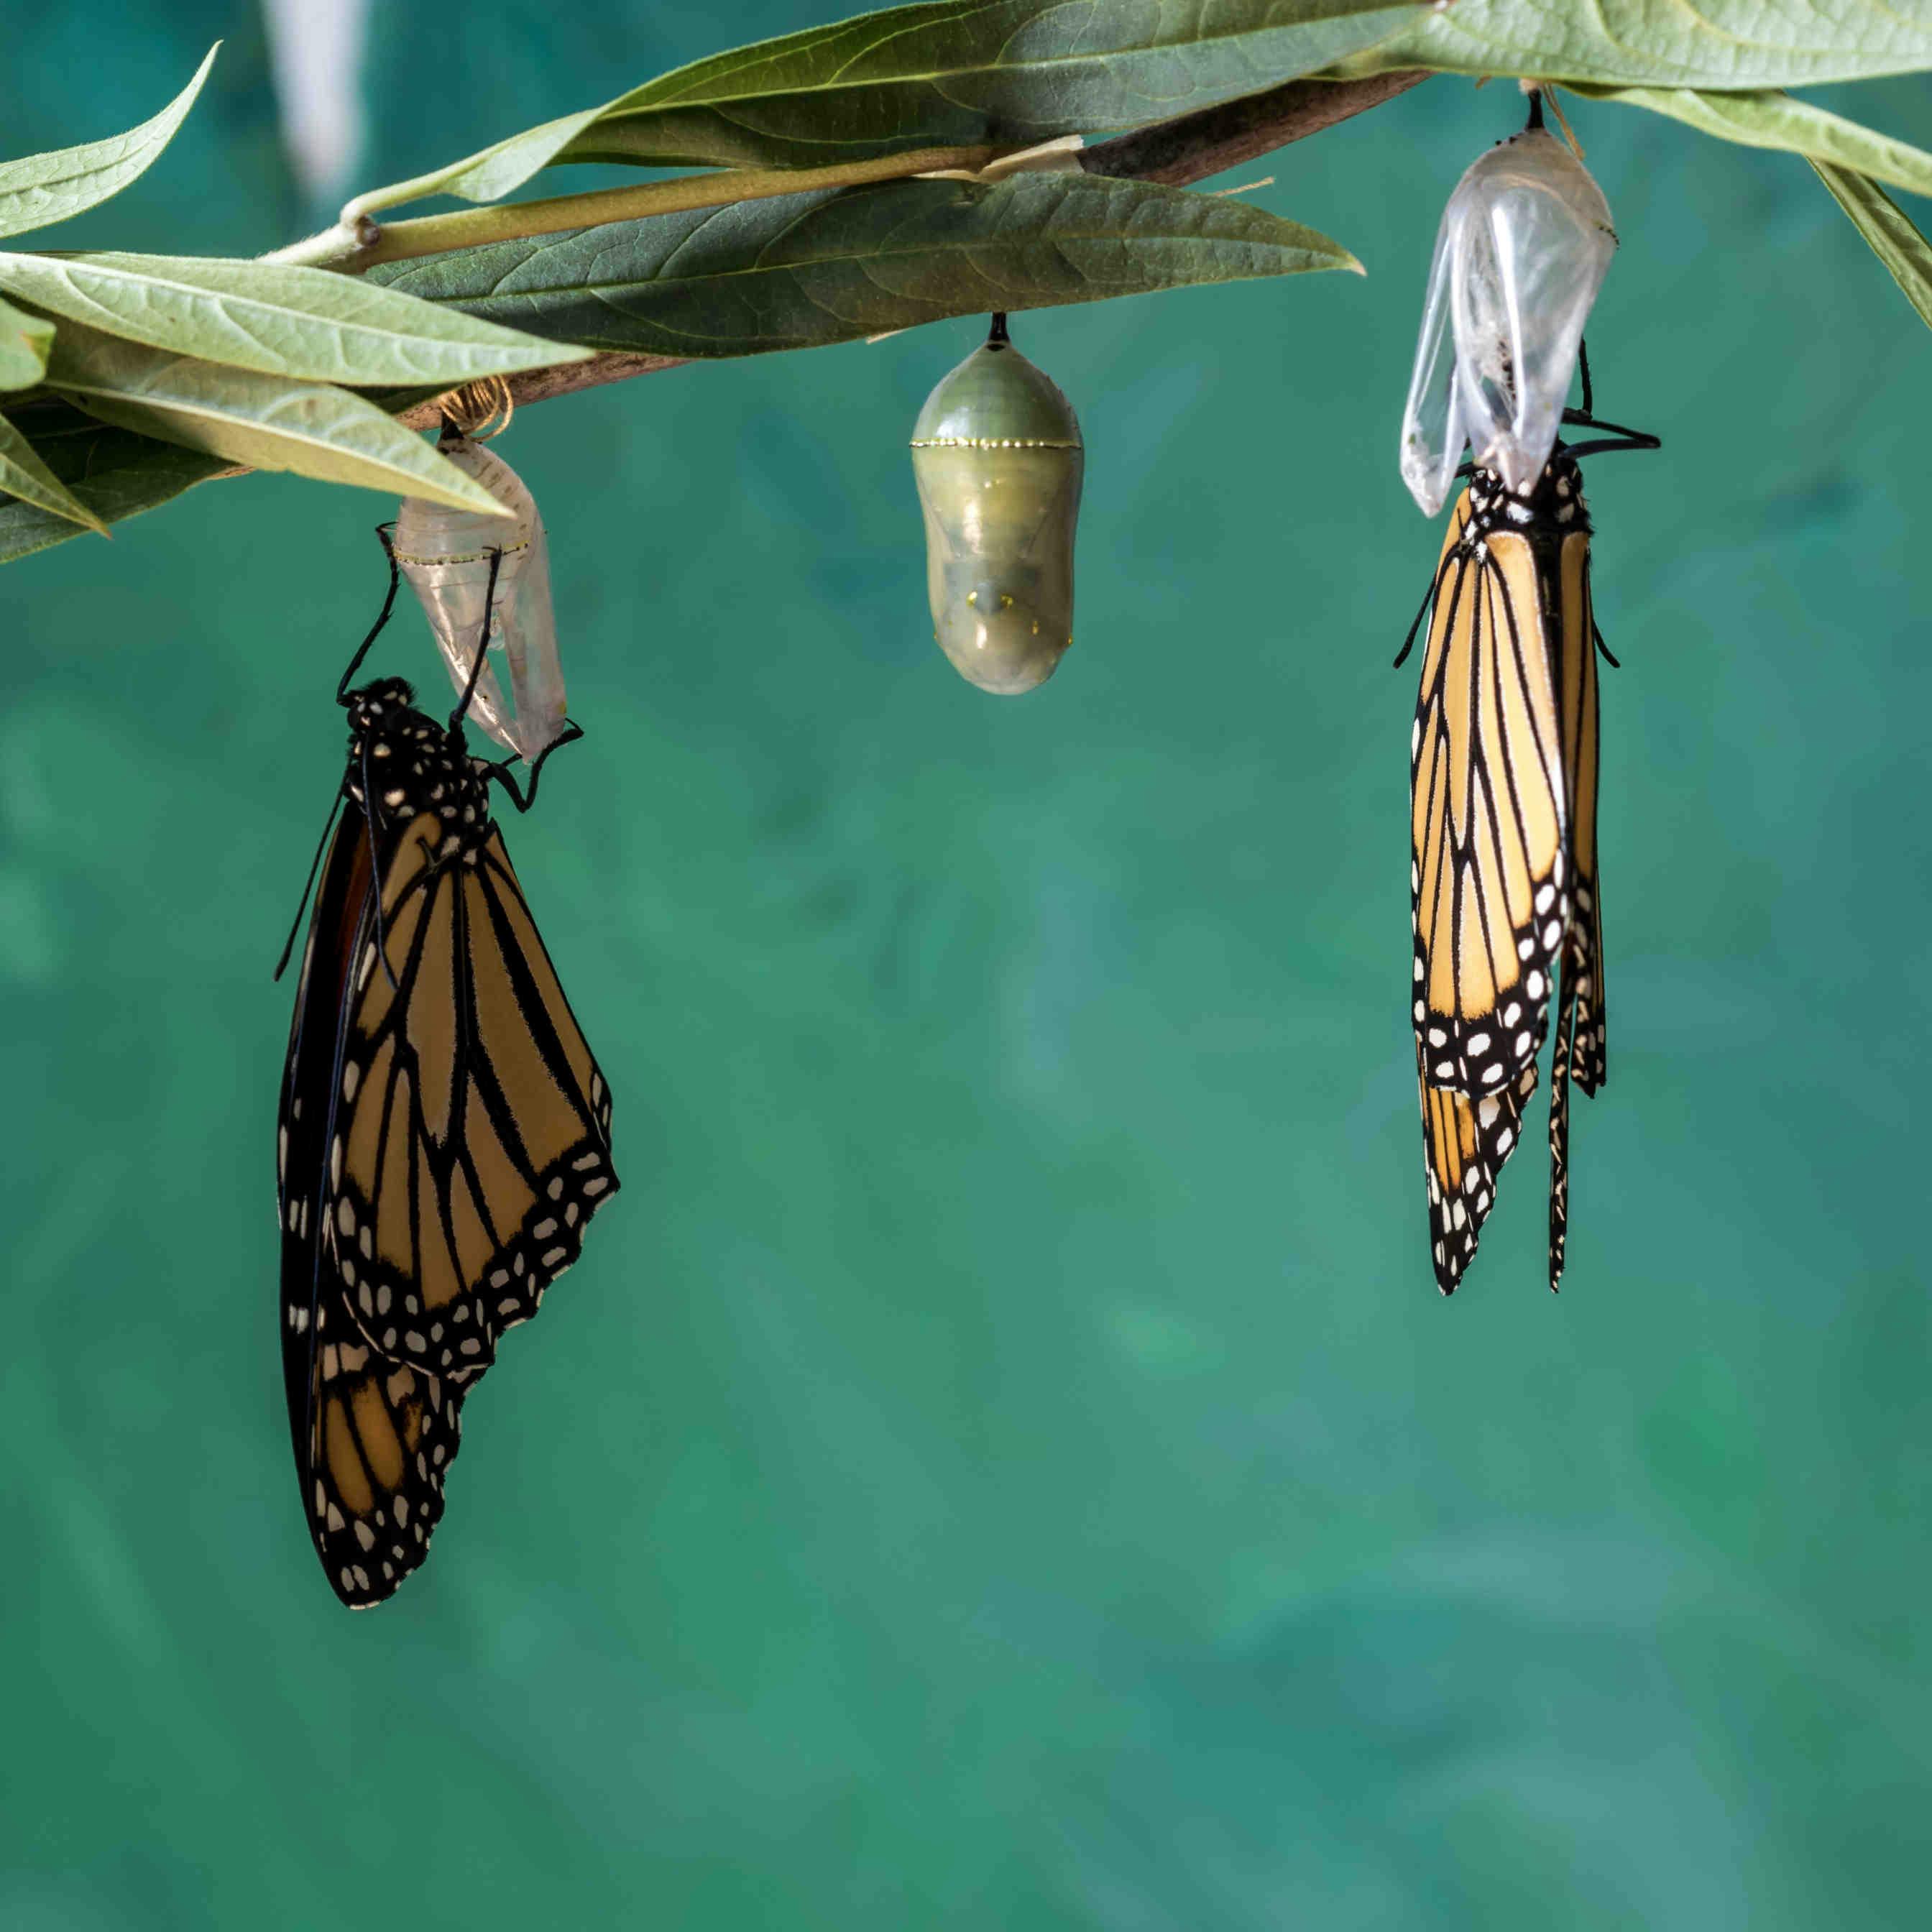 Der Lebenszyklus eines Schmetterlings: Phasen